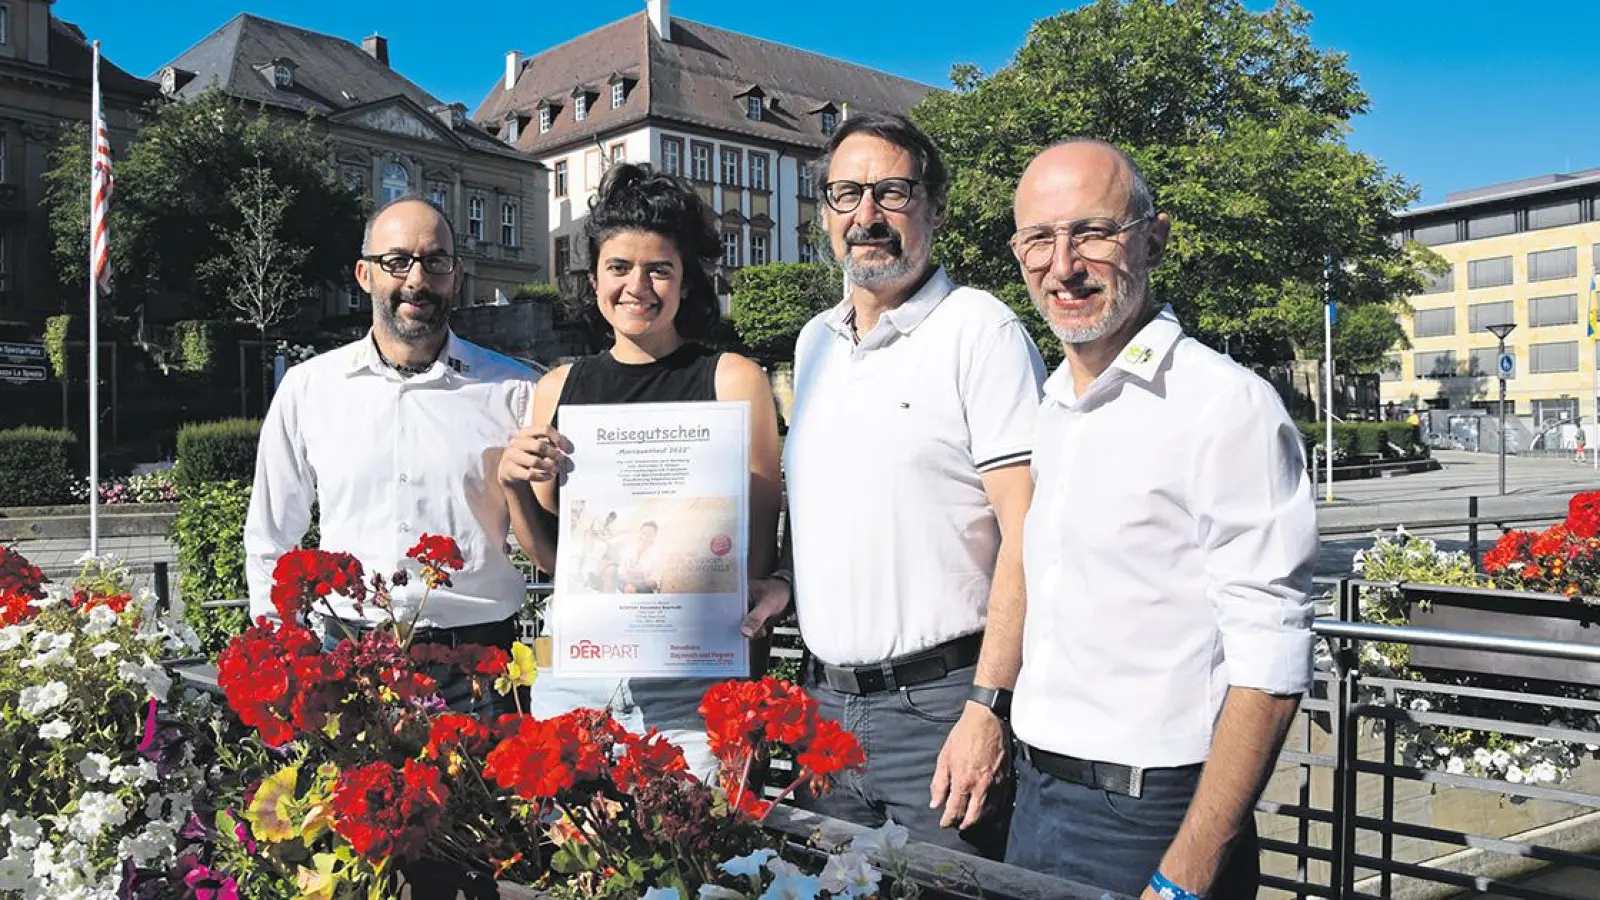 V.l.: Florian Maßen, Organisator des Mainauenlaufs, Gewinnerin Elisa Treffehn, Martin Bayer und Mario Schrödel, ebenfalls Organisator des Mainauenlaufs. (Foto: Jessica Mohr)